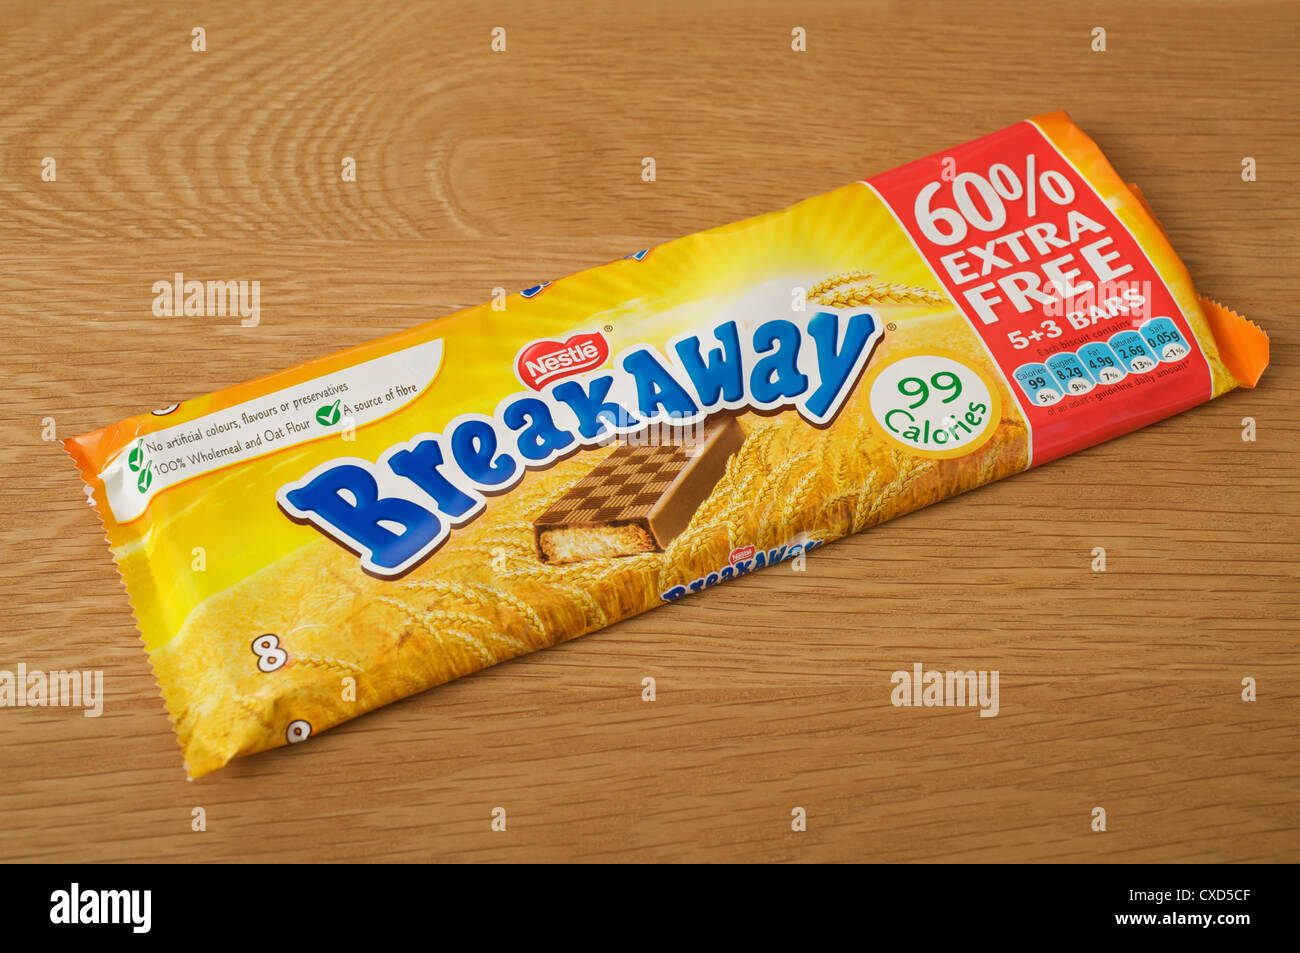 Nestle Breakaway chocolate bars Stock Photo